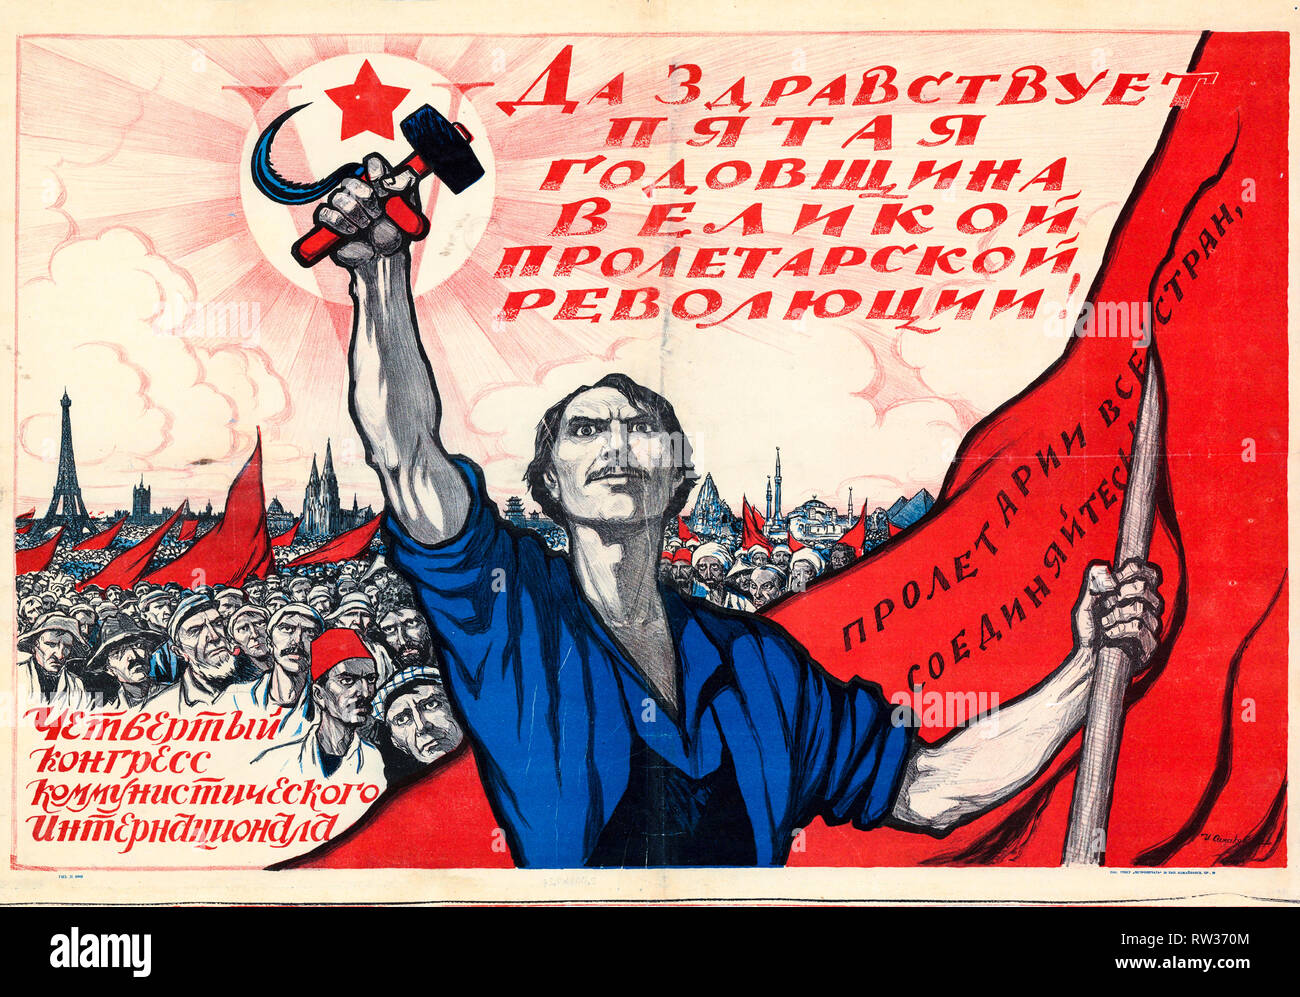 Affiche soviétique dédié à la 5e anniversaire de la révolution d'octobre et 4ème Congrès de l'Internationale Communiste, 1922 Banque D'Images